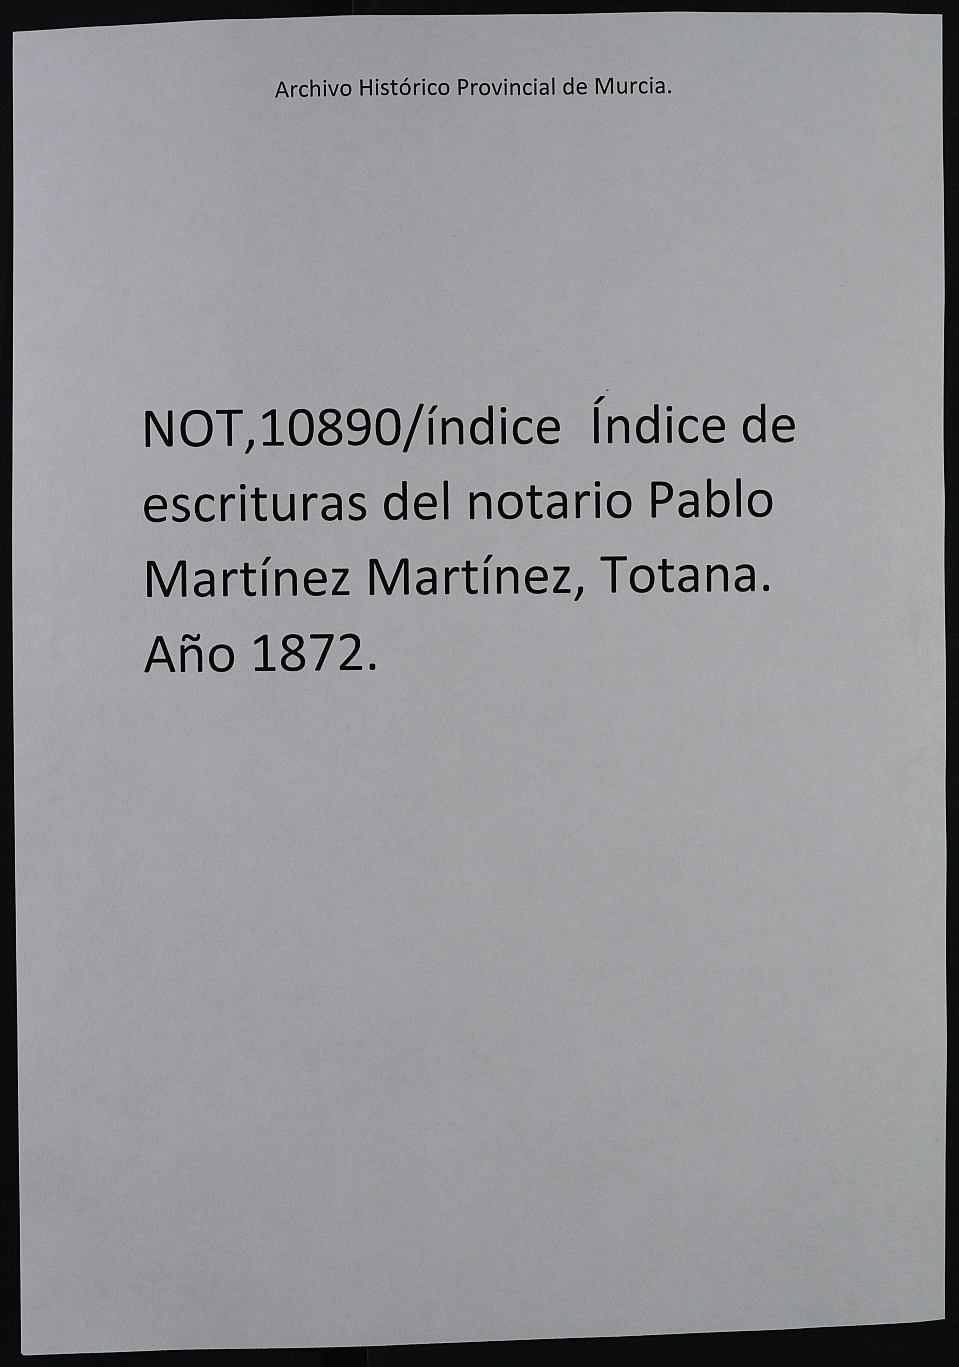 Índice de escrituras del notario Pablo Martínez Martínez, Totana. Año 1872.